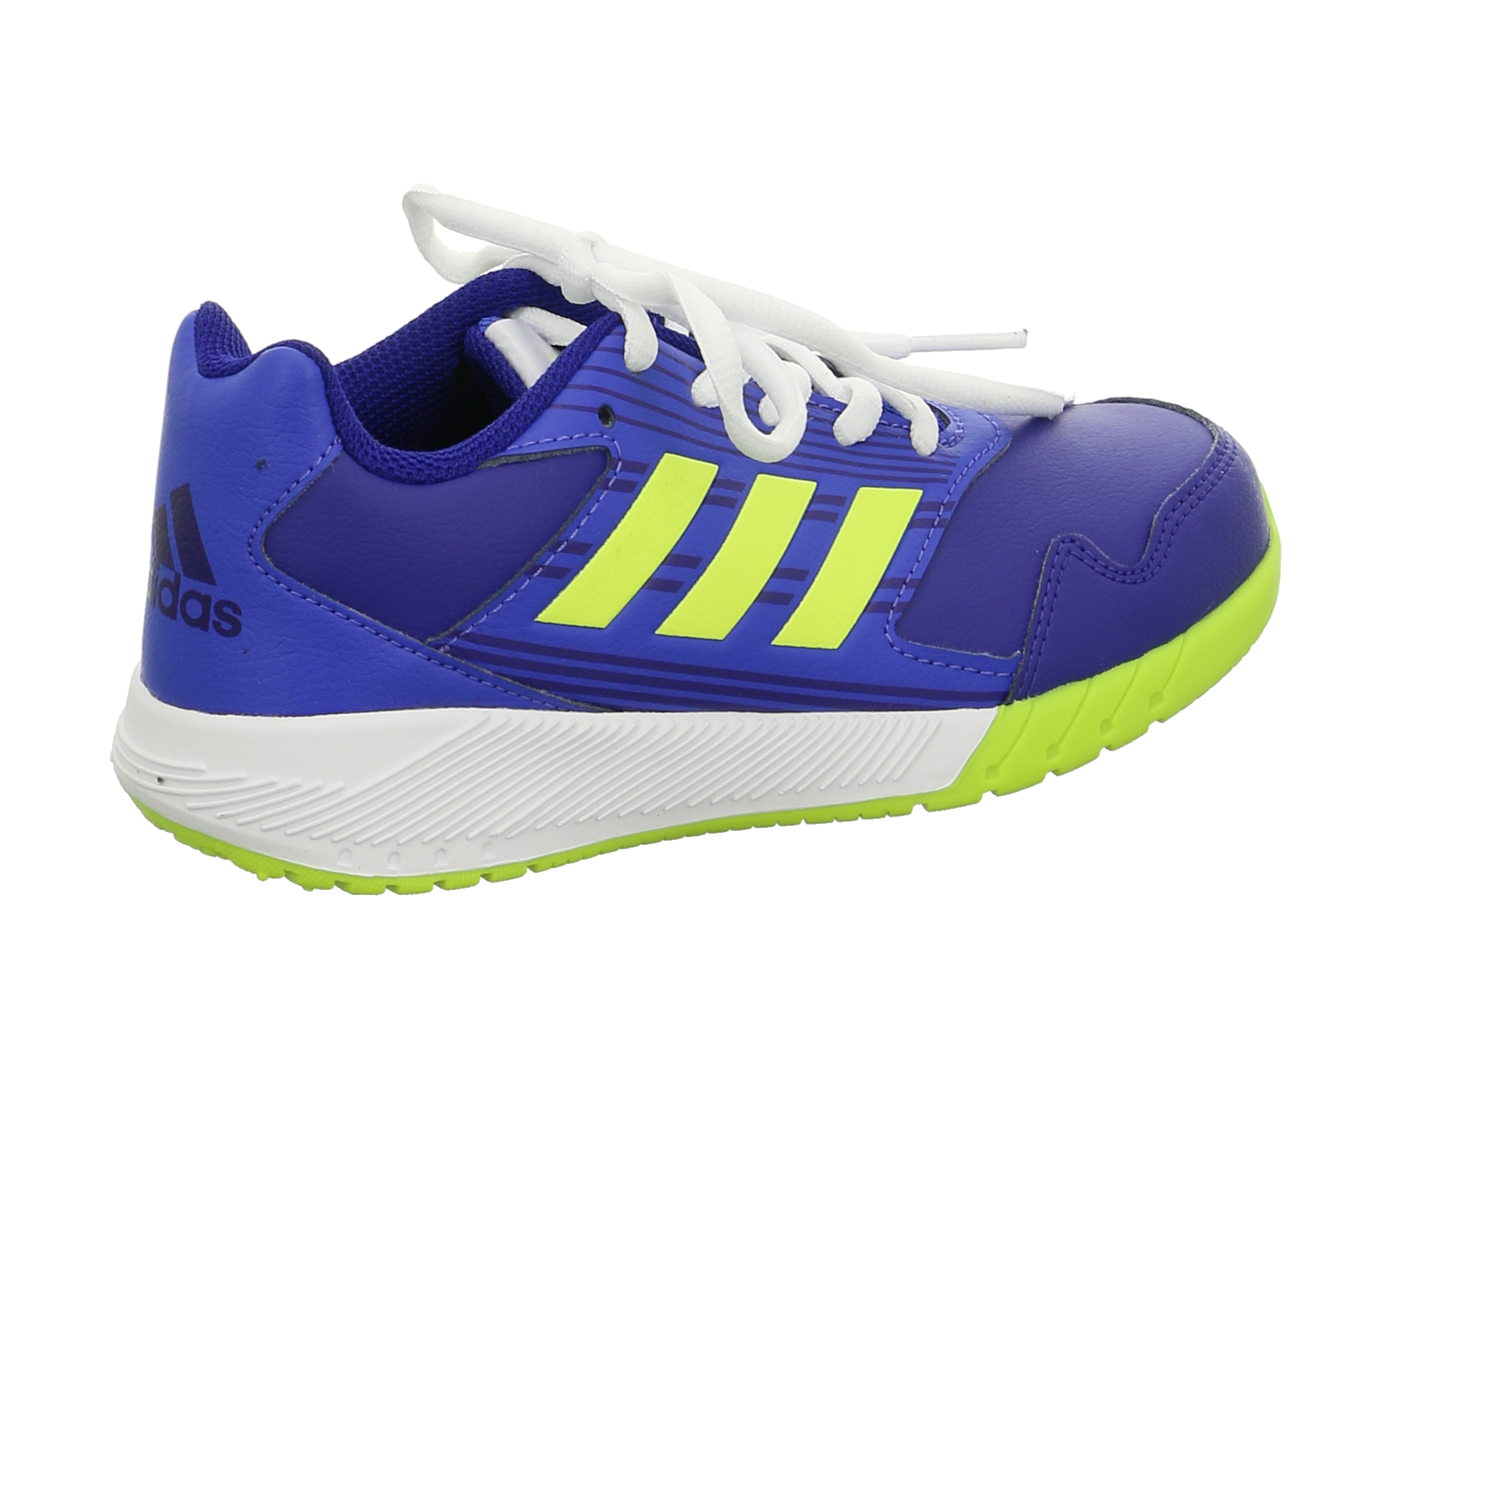 Adidas Sneaker K blau / dunkel-blau